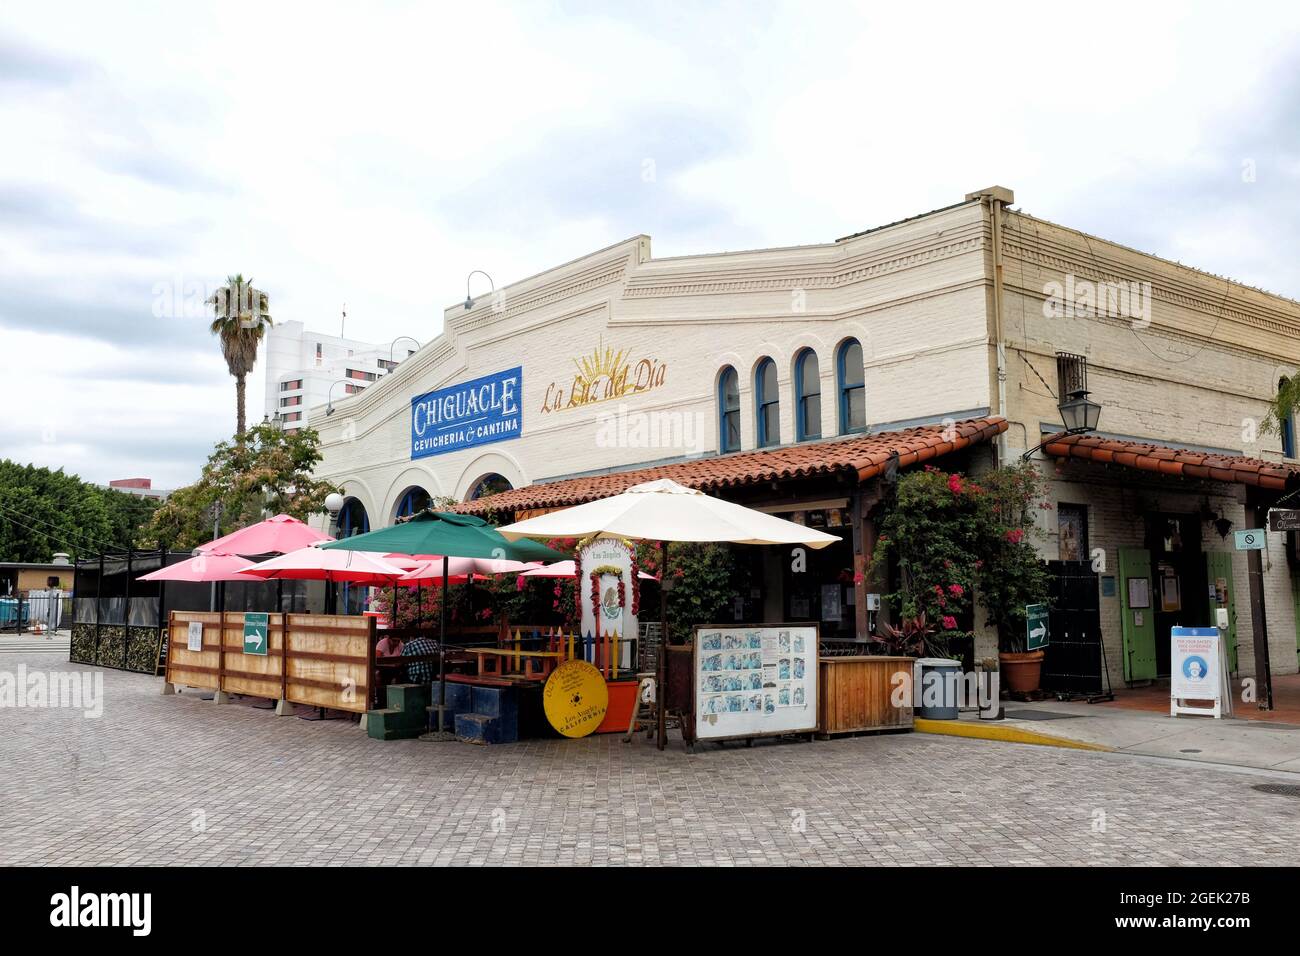 LOS ANGELES, CALIFORNIA - 18 AGO 2021: Chiguacle Sabor ancestrale de Mexico a Los Angeles. Un autentico ristorante messicano nella storica Olvera Str Foto Stock